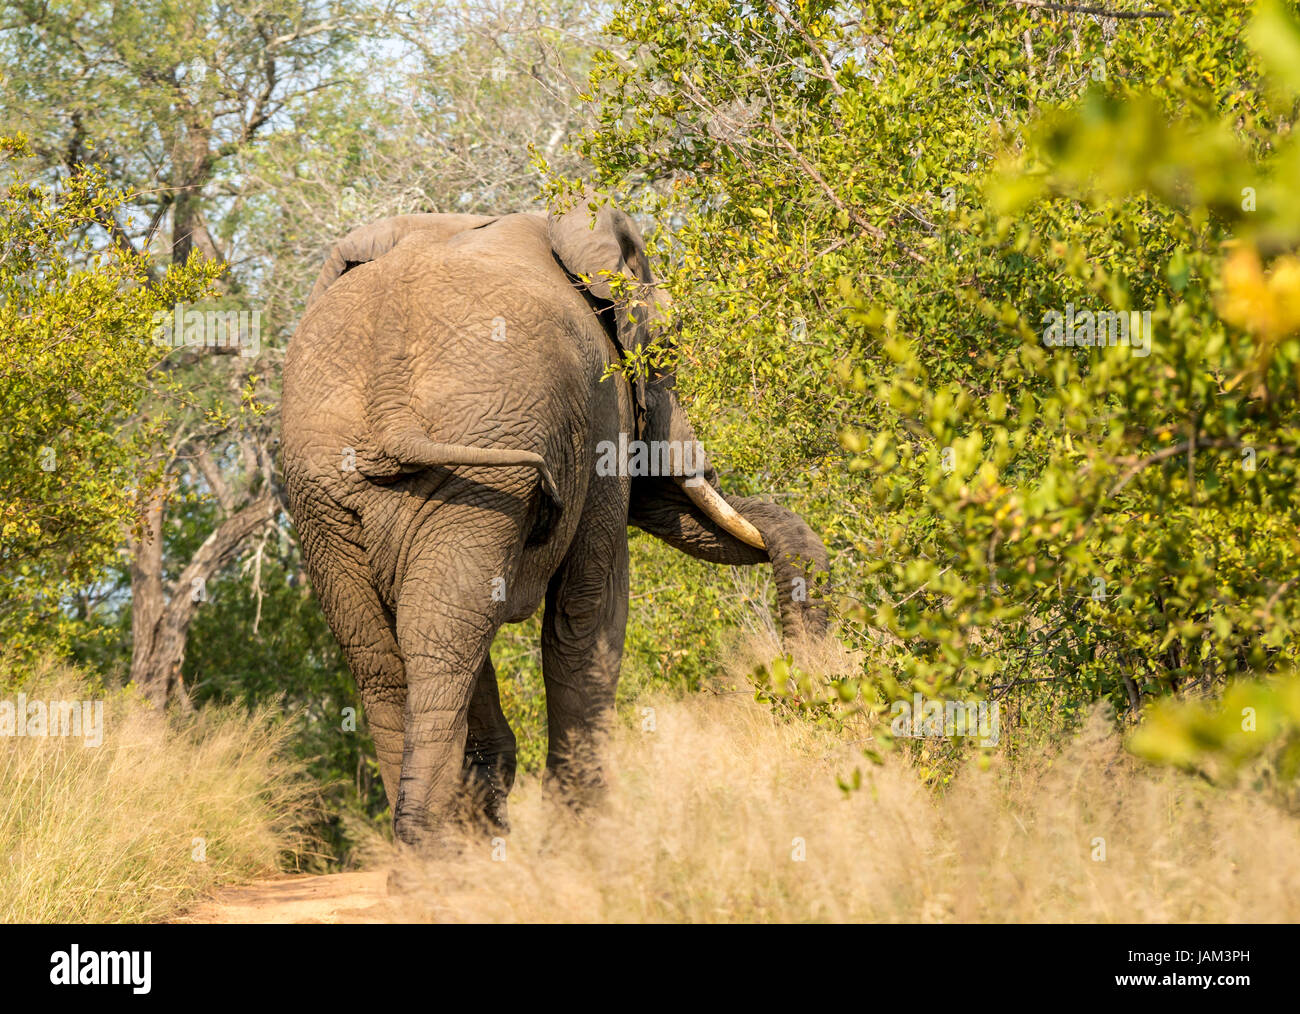 Afrikanischer Stierelefant im Most, gekennzeichnet durch den um den Lumb gewickelten Stamm, Groß-Kruger-Nationalpark, Südafrika Stockfoto